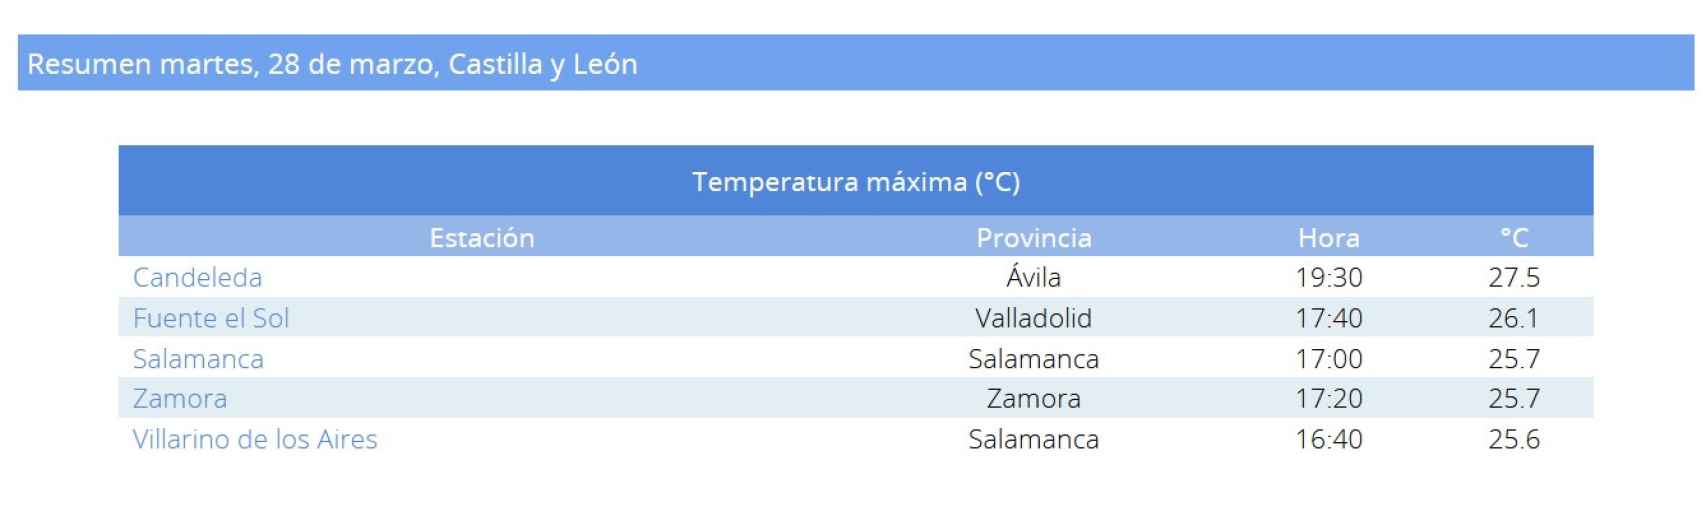 Temperaturas máximas en Castilla y León